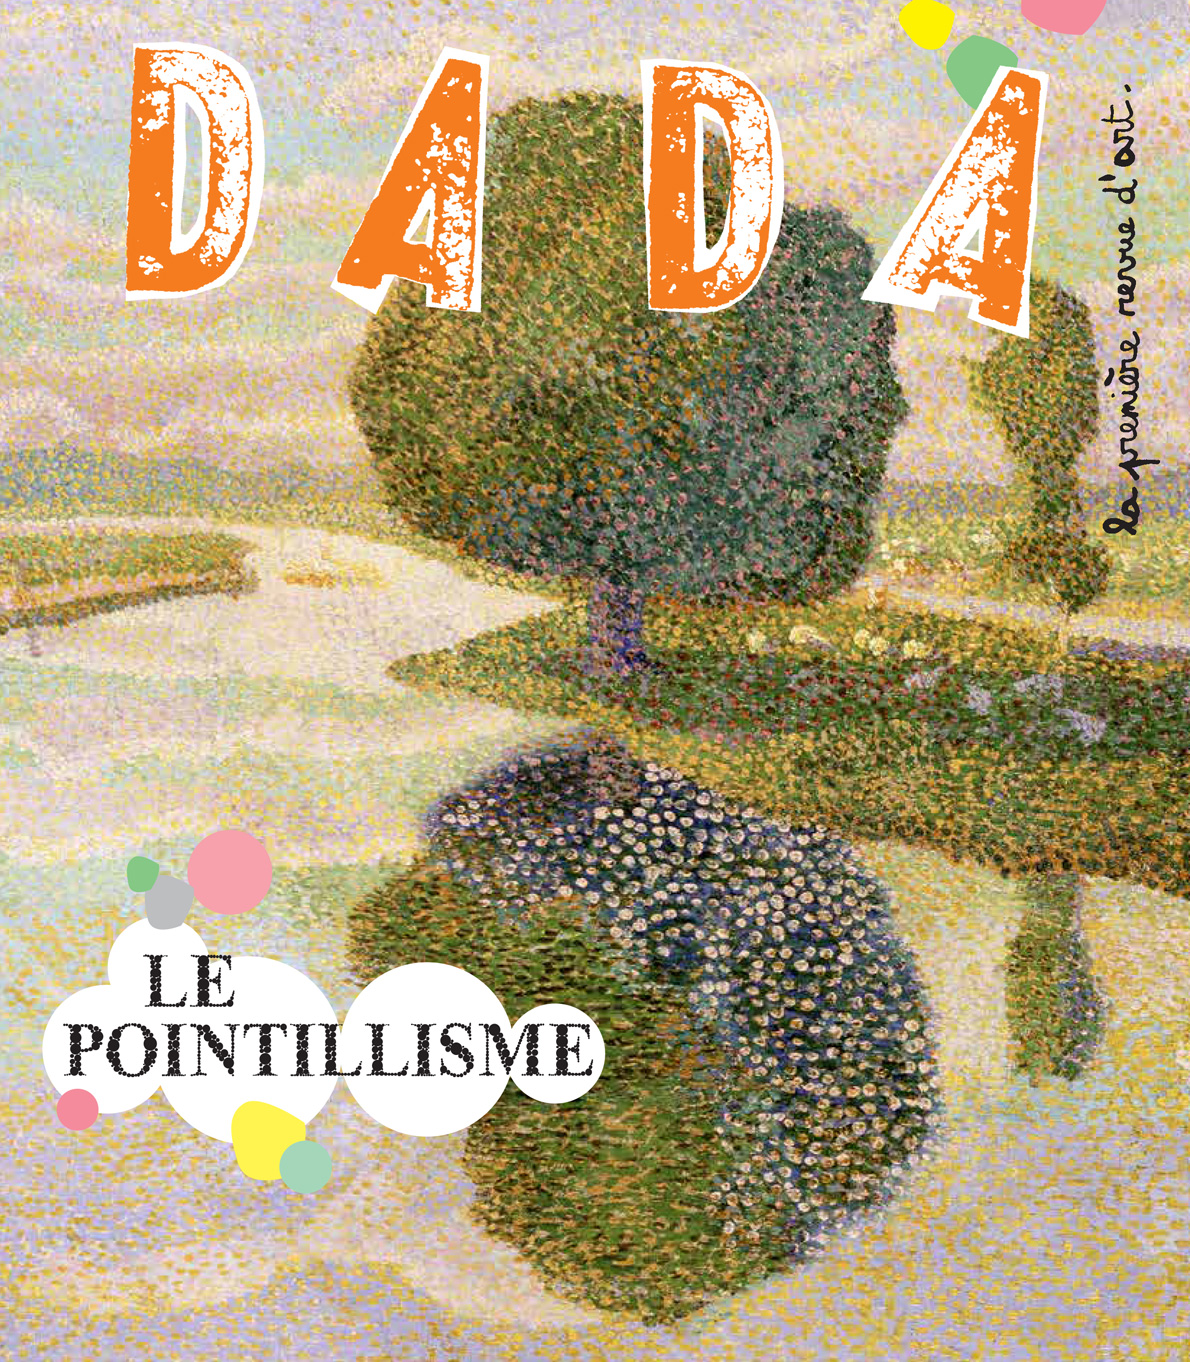 DADA – pointillisme